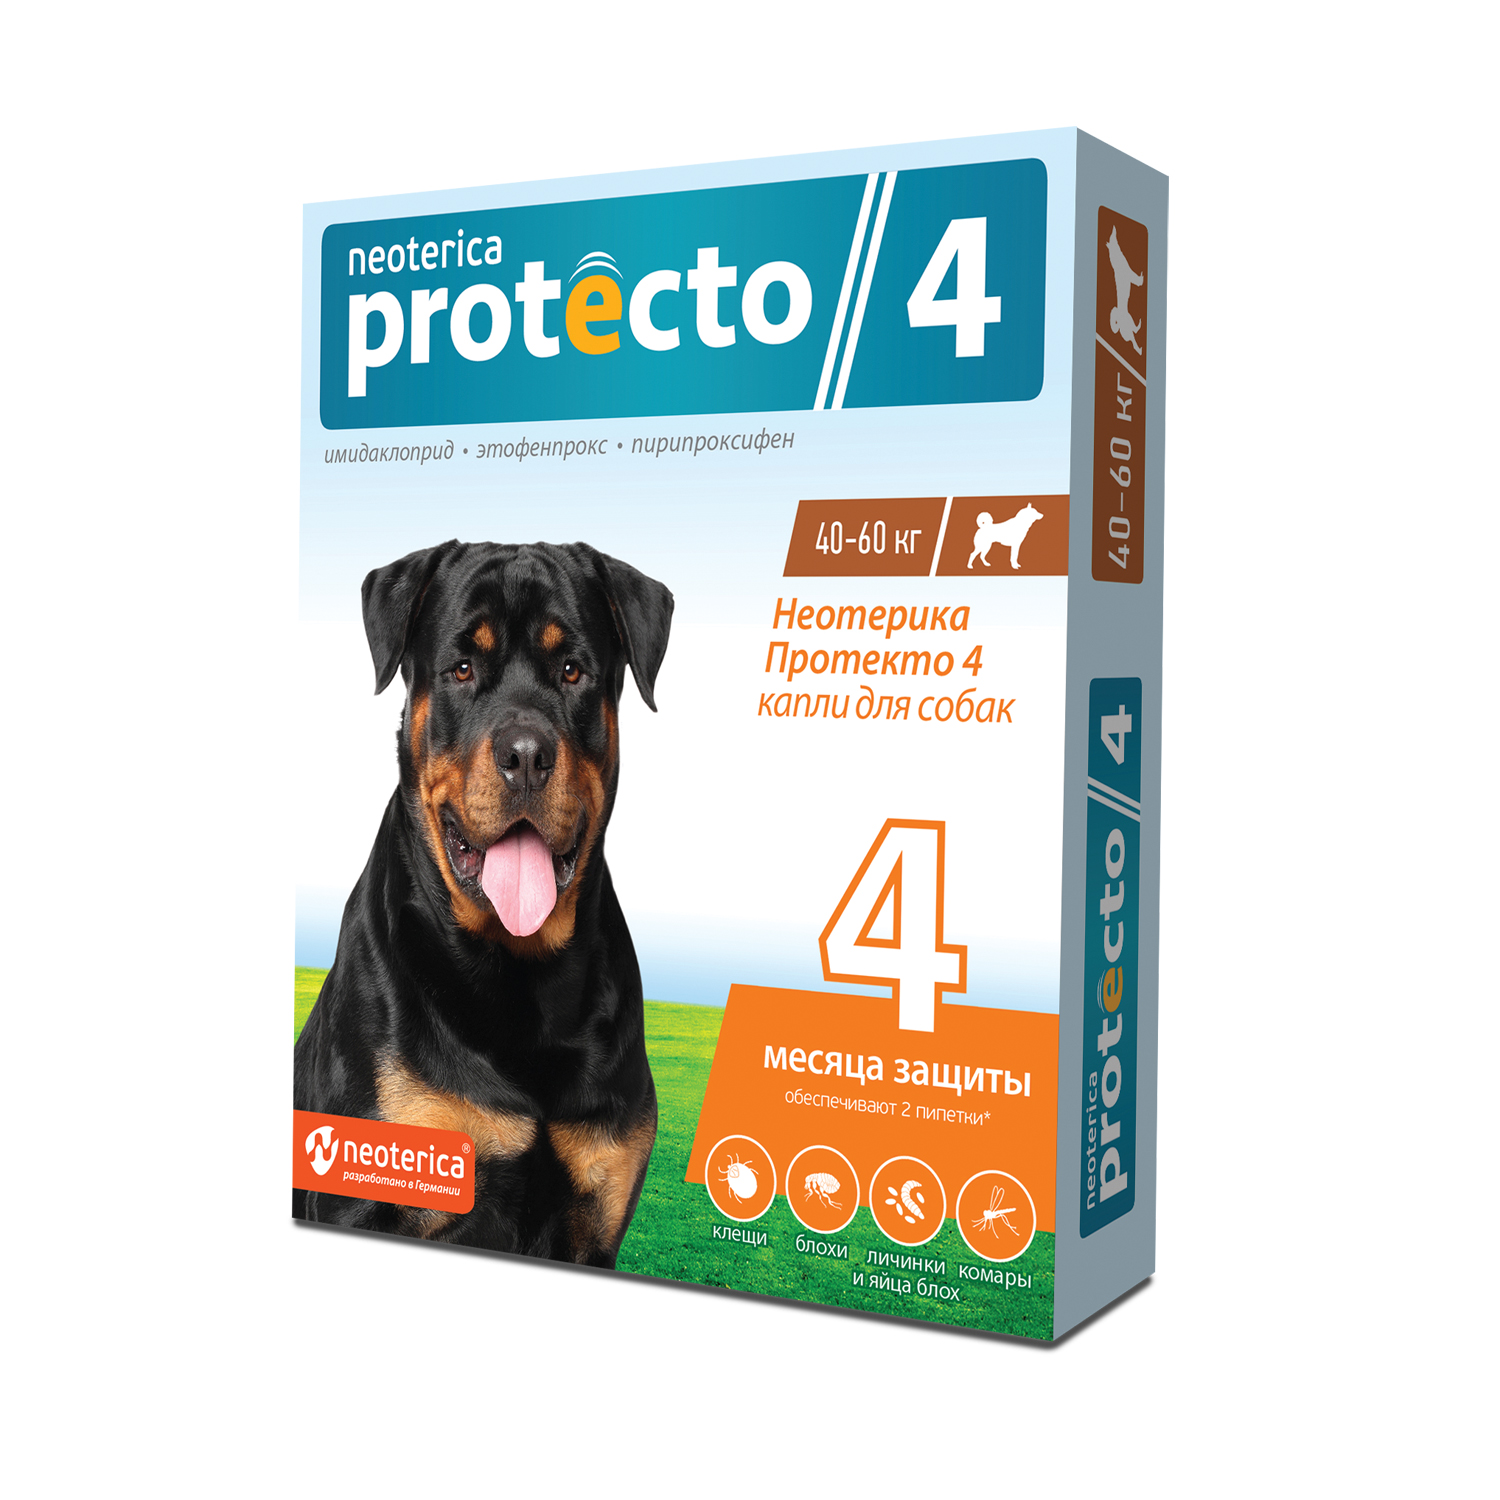  NP Protecto капли для собак 40-60кг (2пипетки) фото, цены, купить